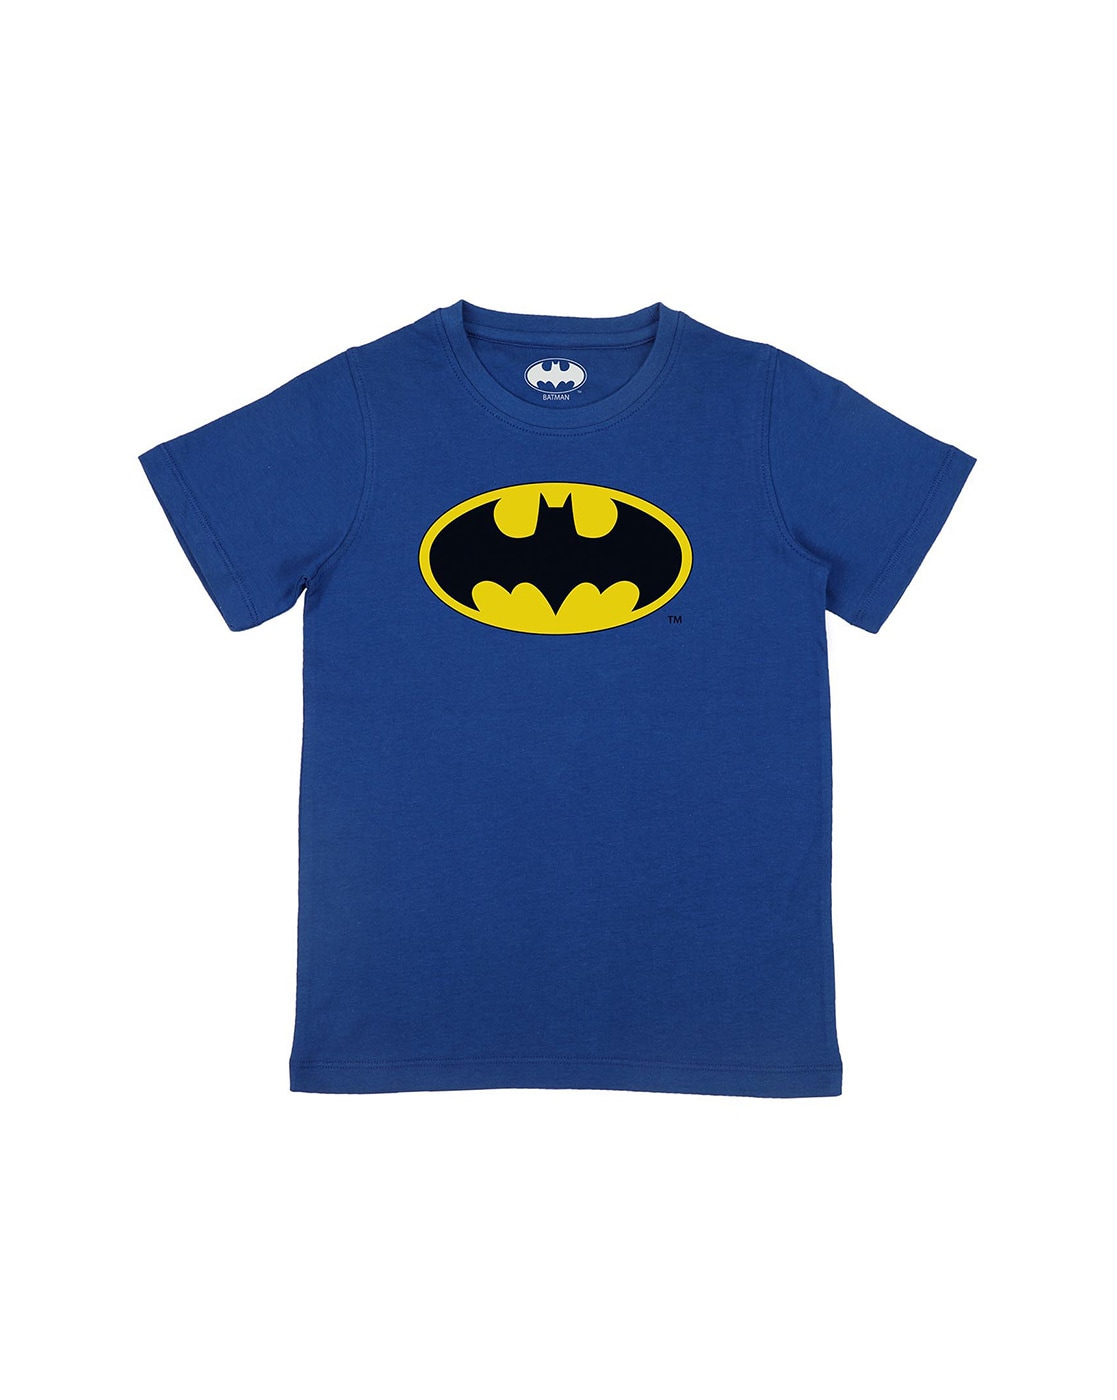 Batman - Old Time Logo T-Shirt by Brand A - Pixels Merch